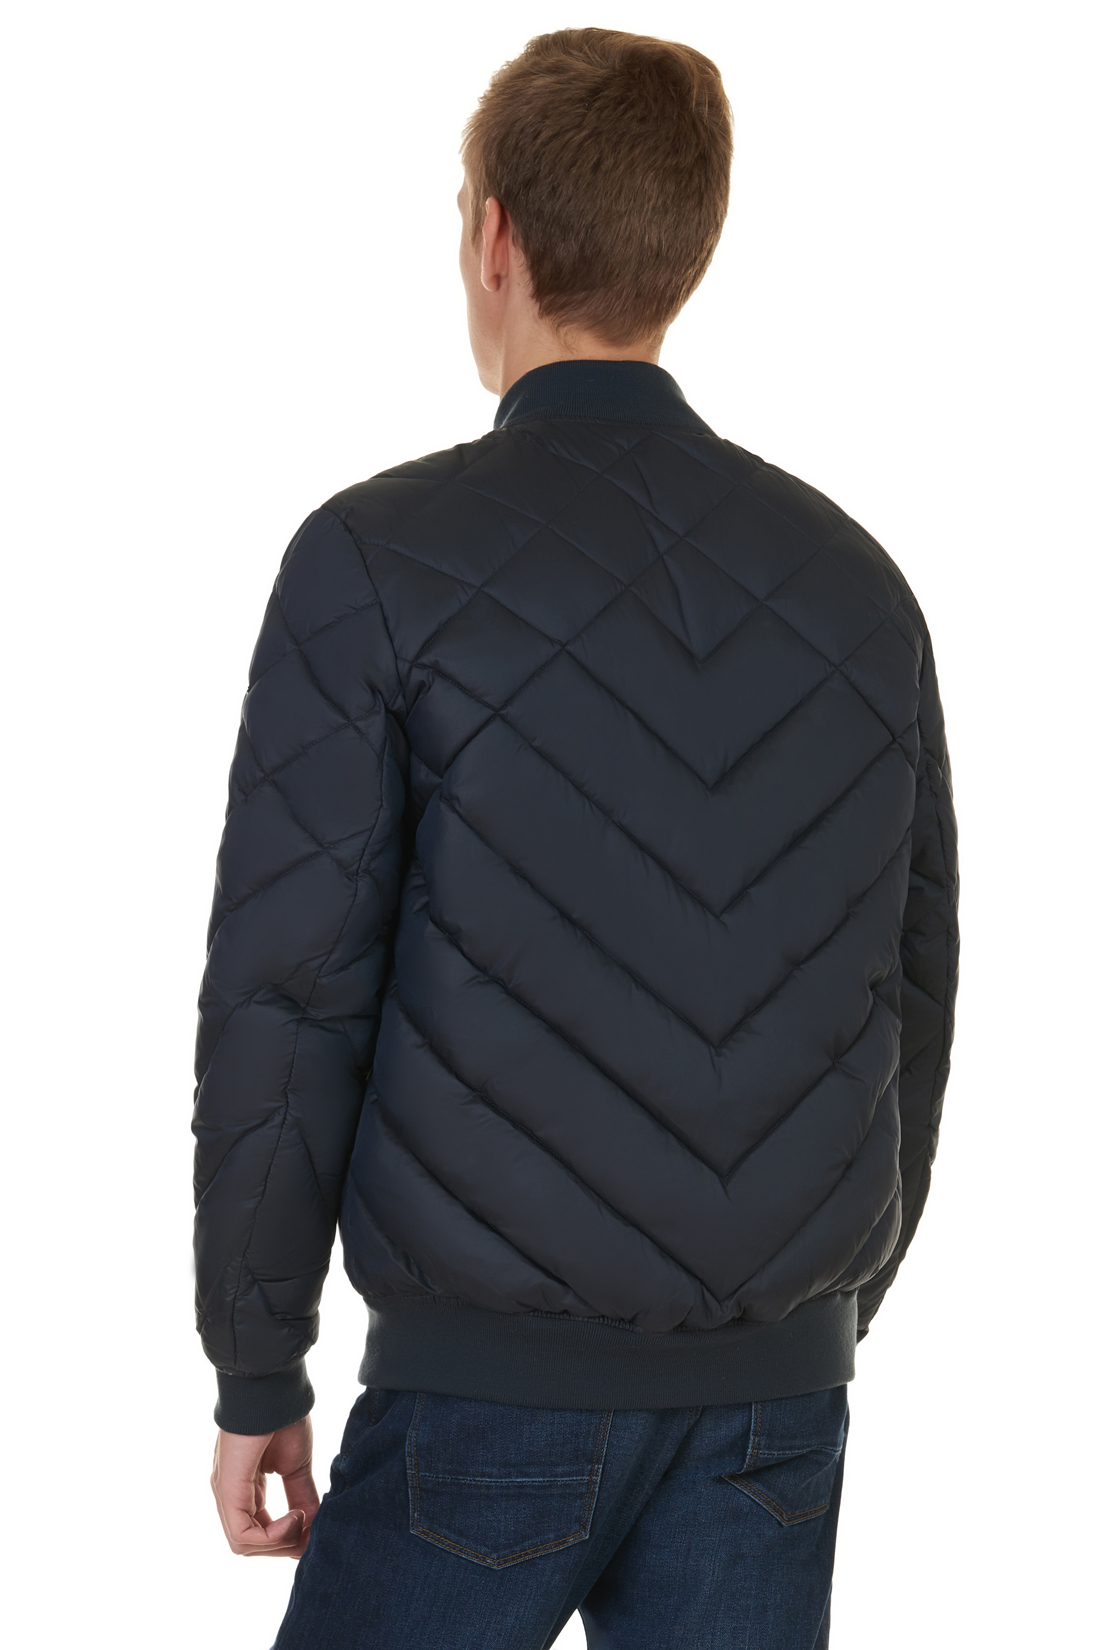 Дутая куртка-бомбер (арт. baon B537552), размер L, цвет синий Дутая куртка-бомбер (арт. baon B537552) - фото 2